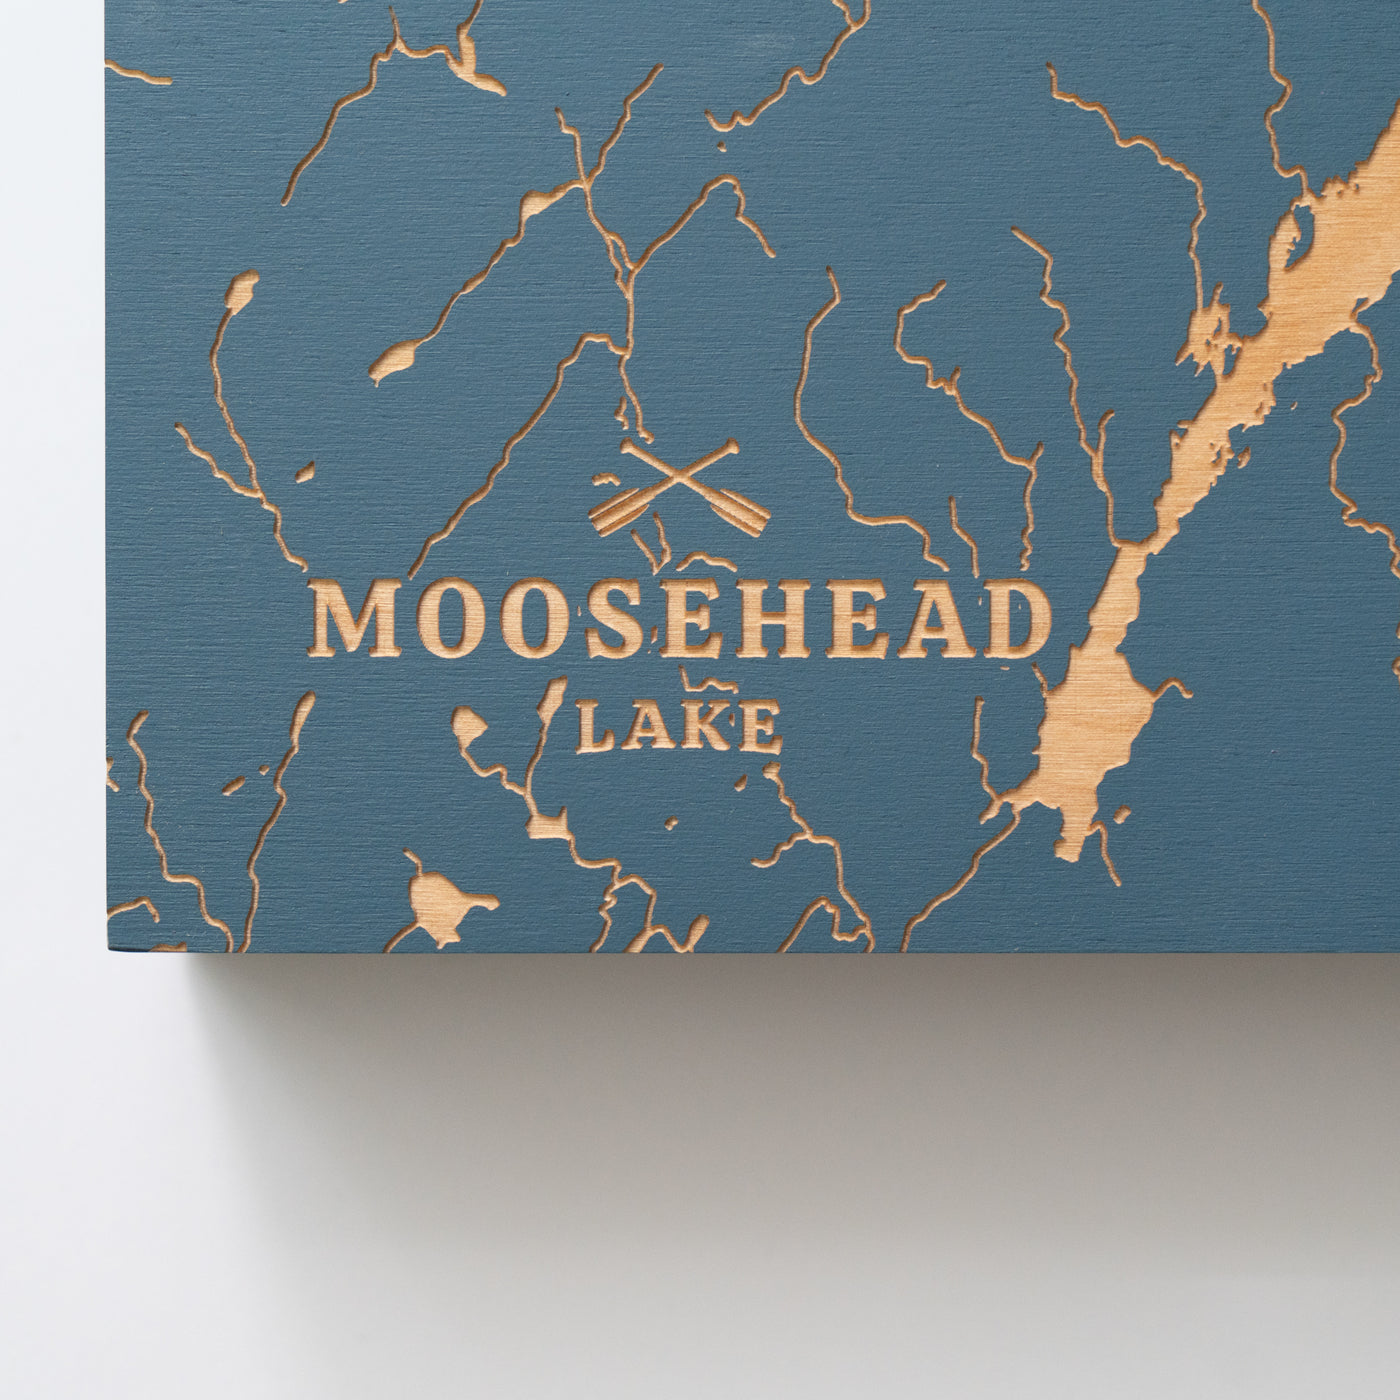 Ashokan Reservoir, New York Lake Map